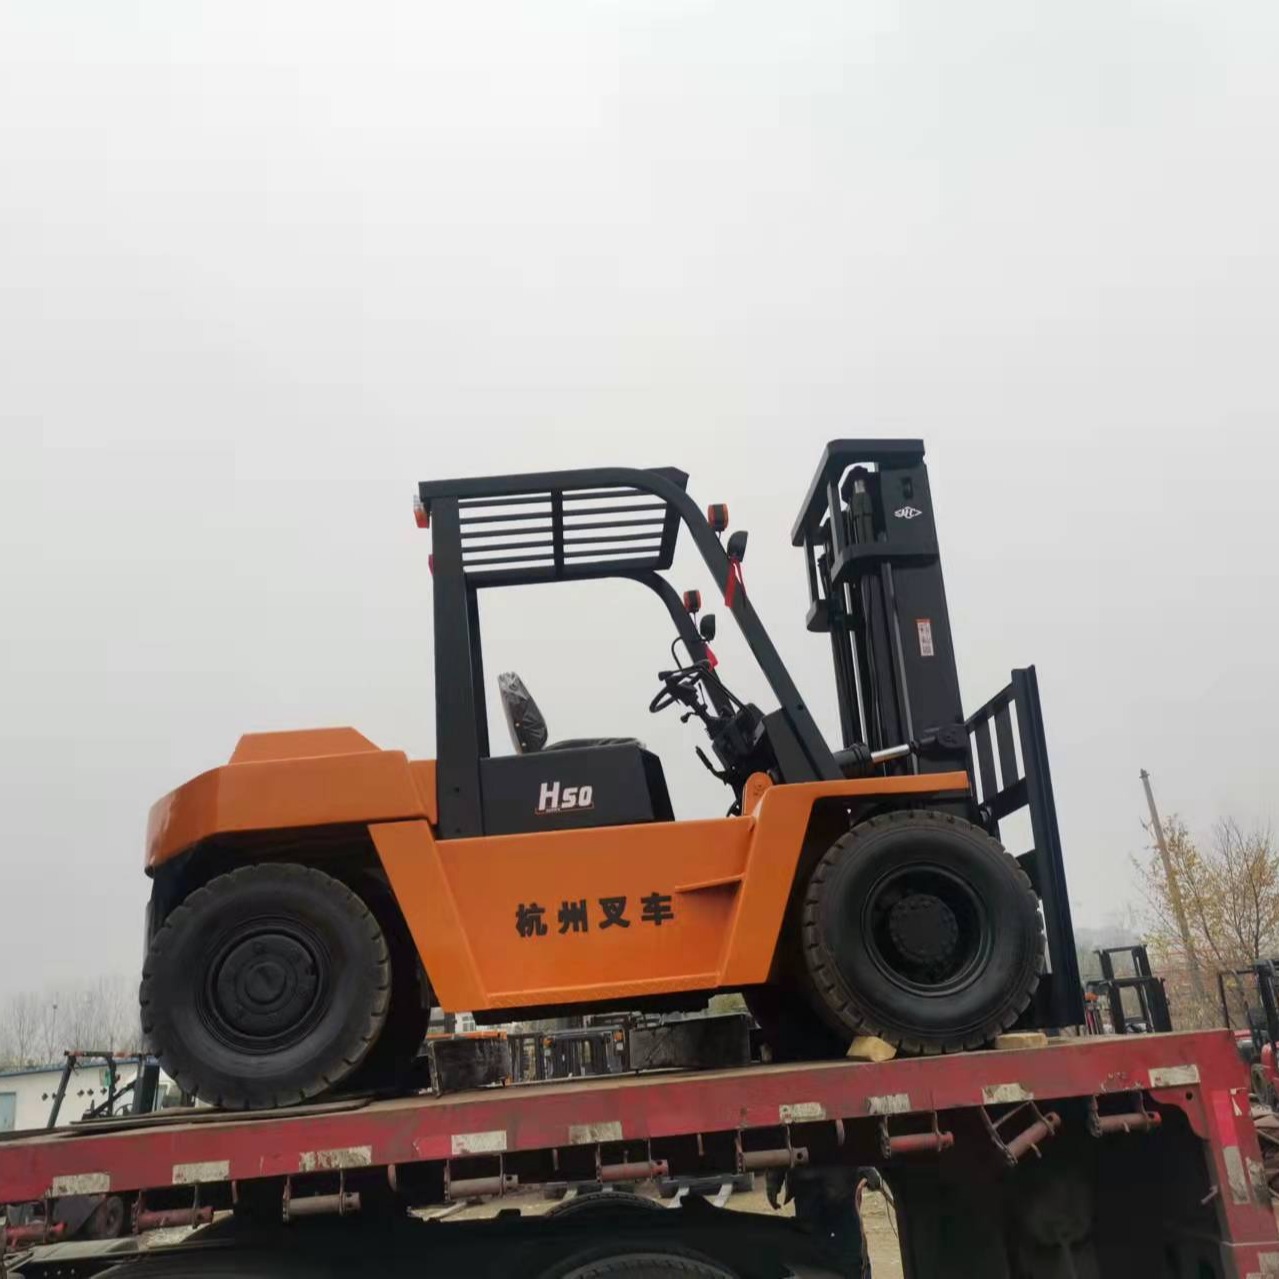 杭州二手叉车出售 二手5 6 7吨叉车价格  徐州二手叉车购买 朝柴6102发动机